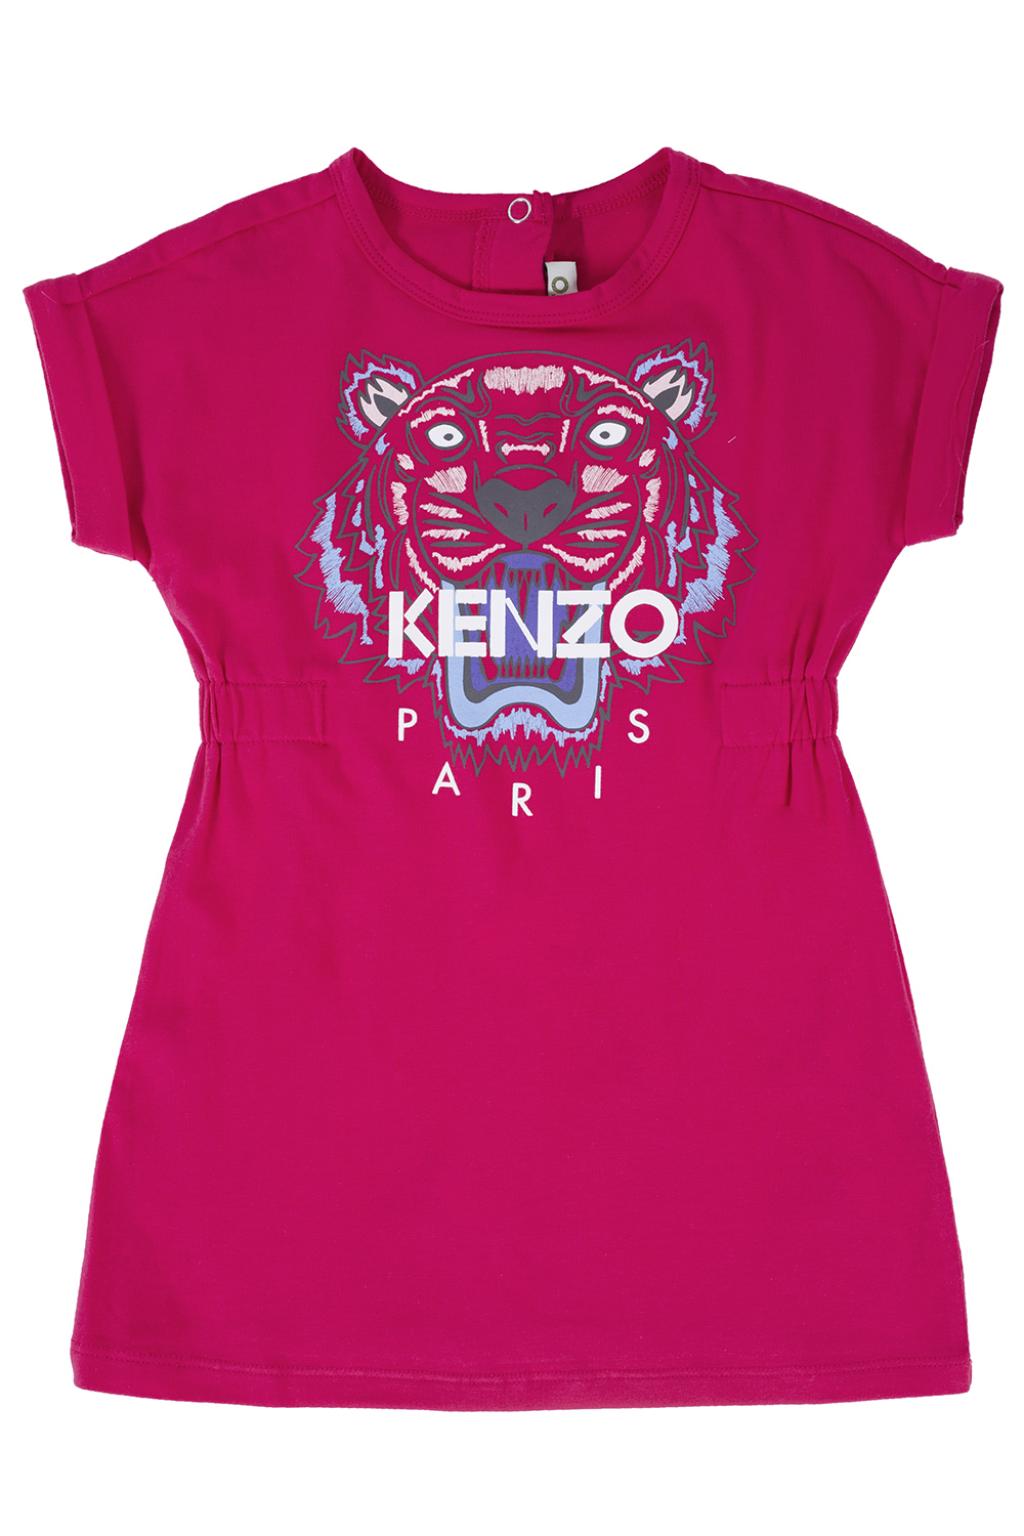 kenzo kids tiger